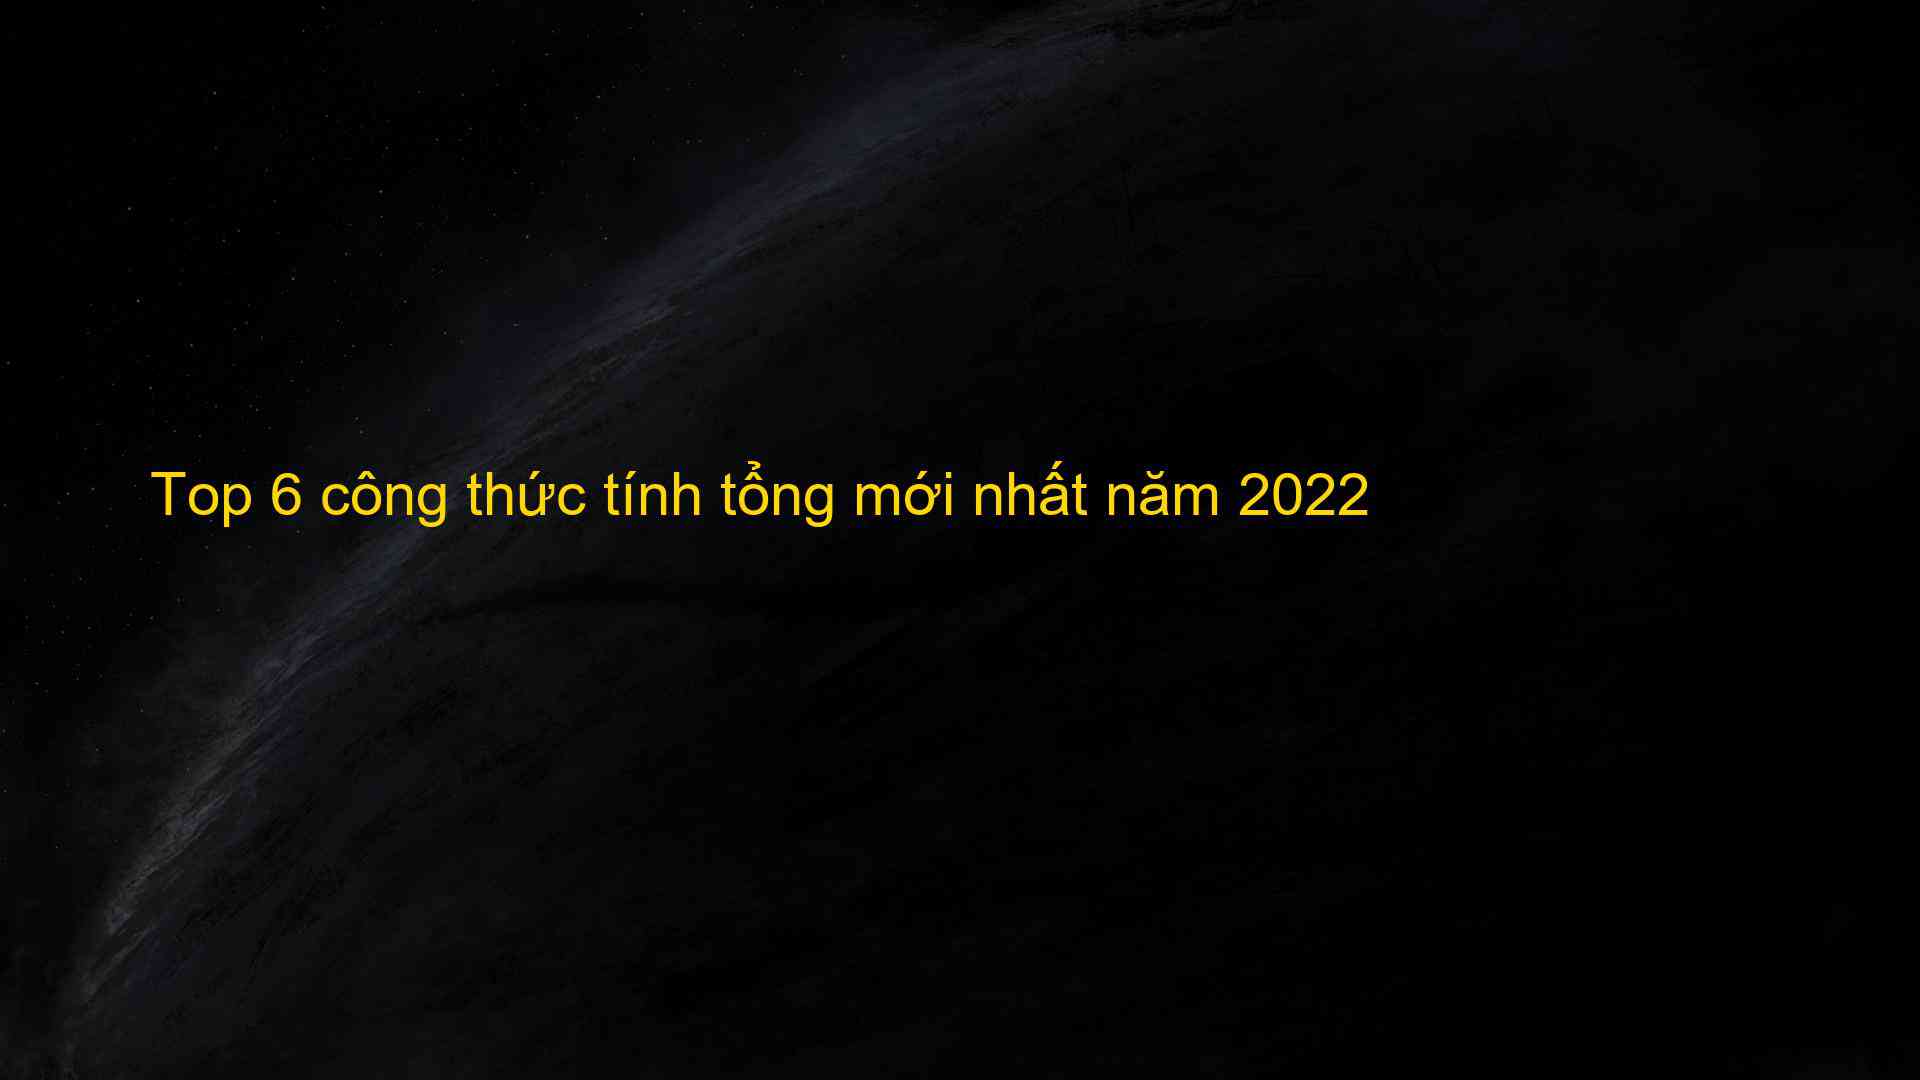 Top 6 cong thuc tinh tong moi nhat nam 2022 1659817123